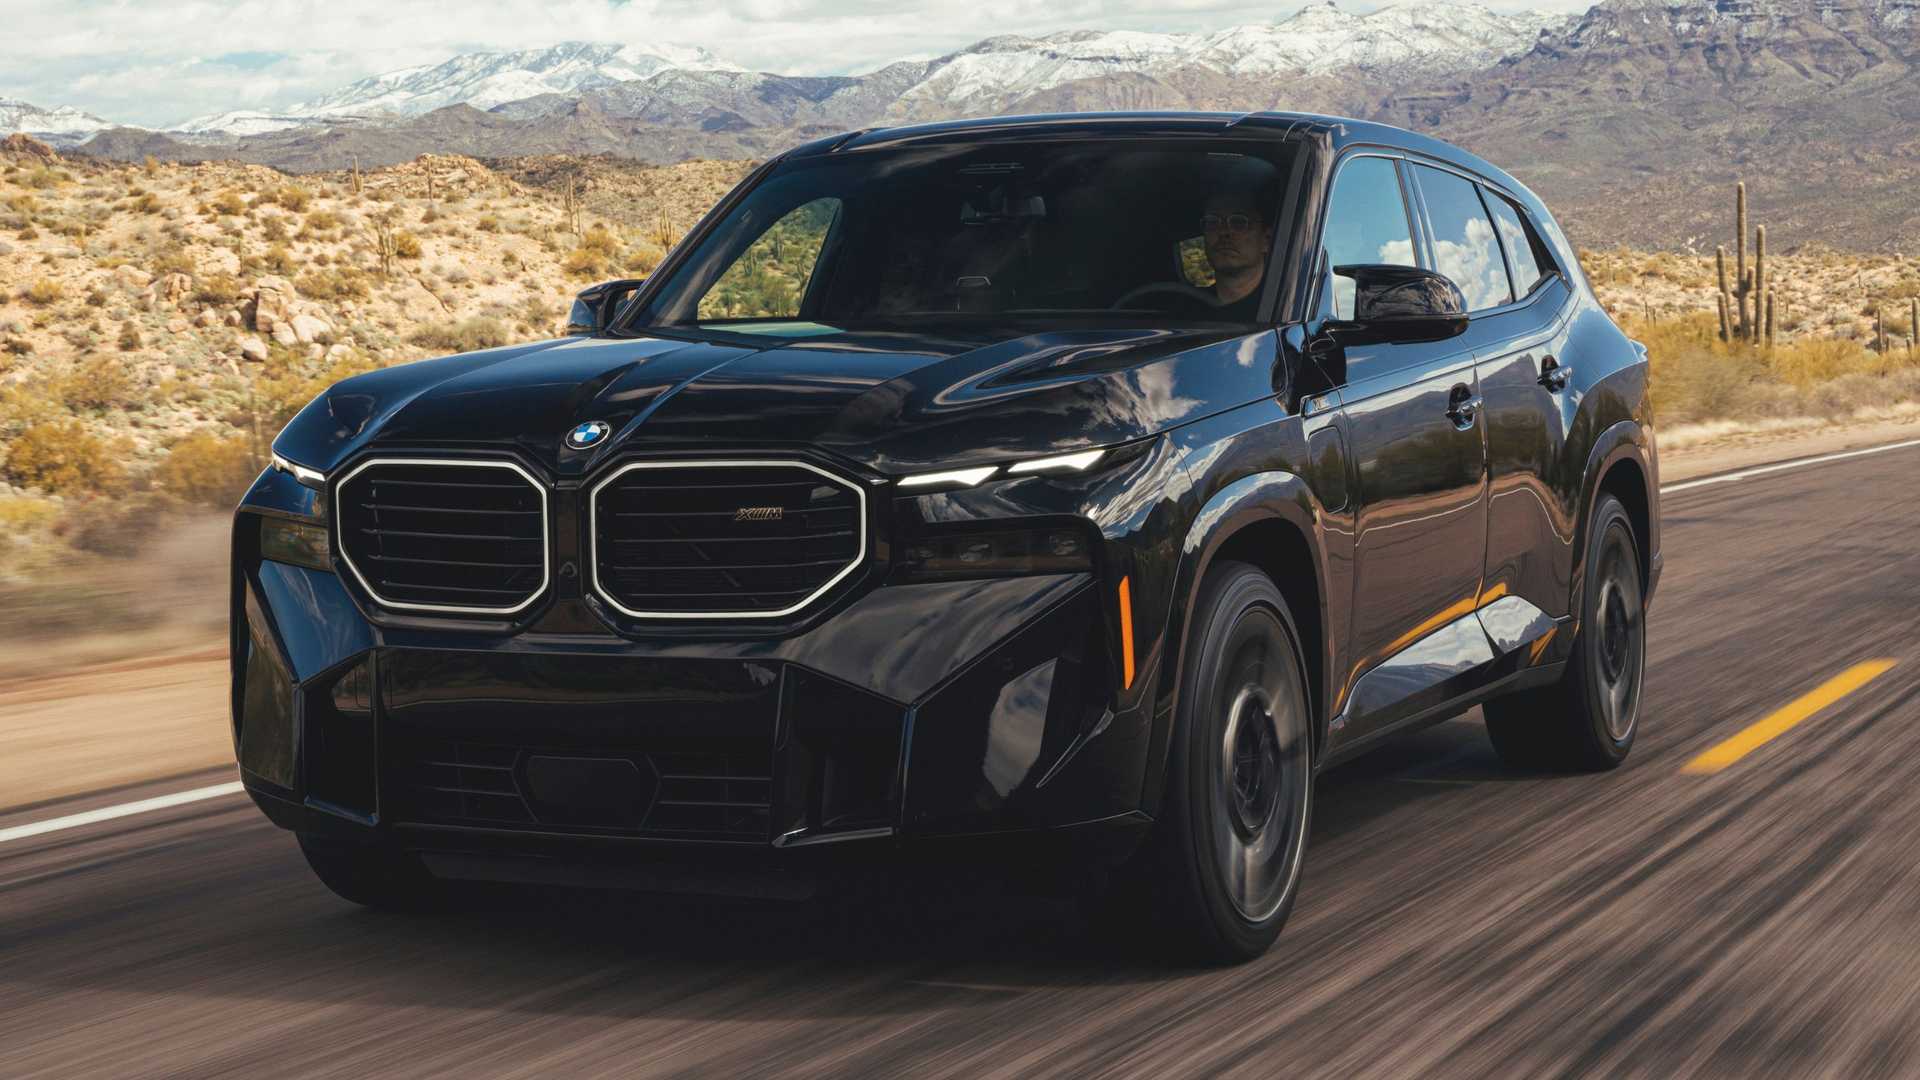 BMW XM 2024